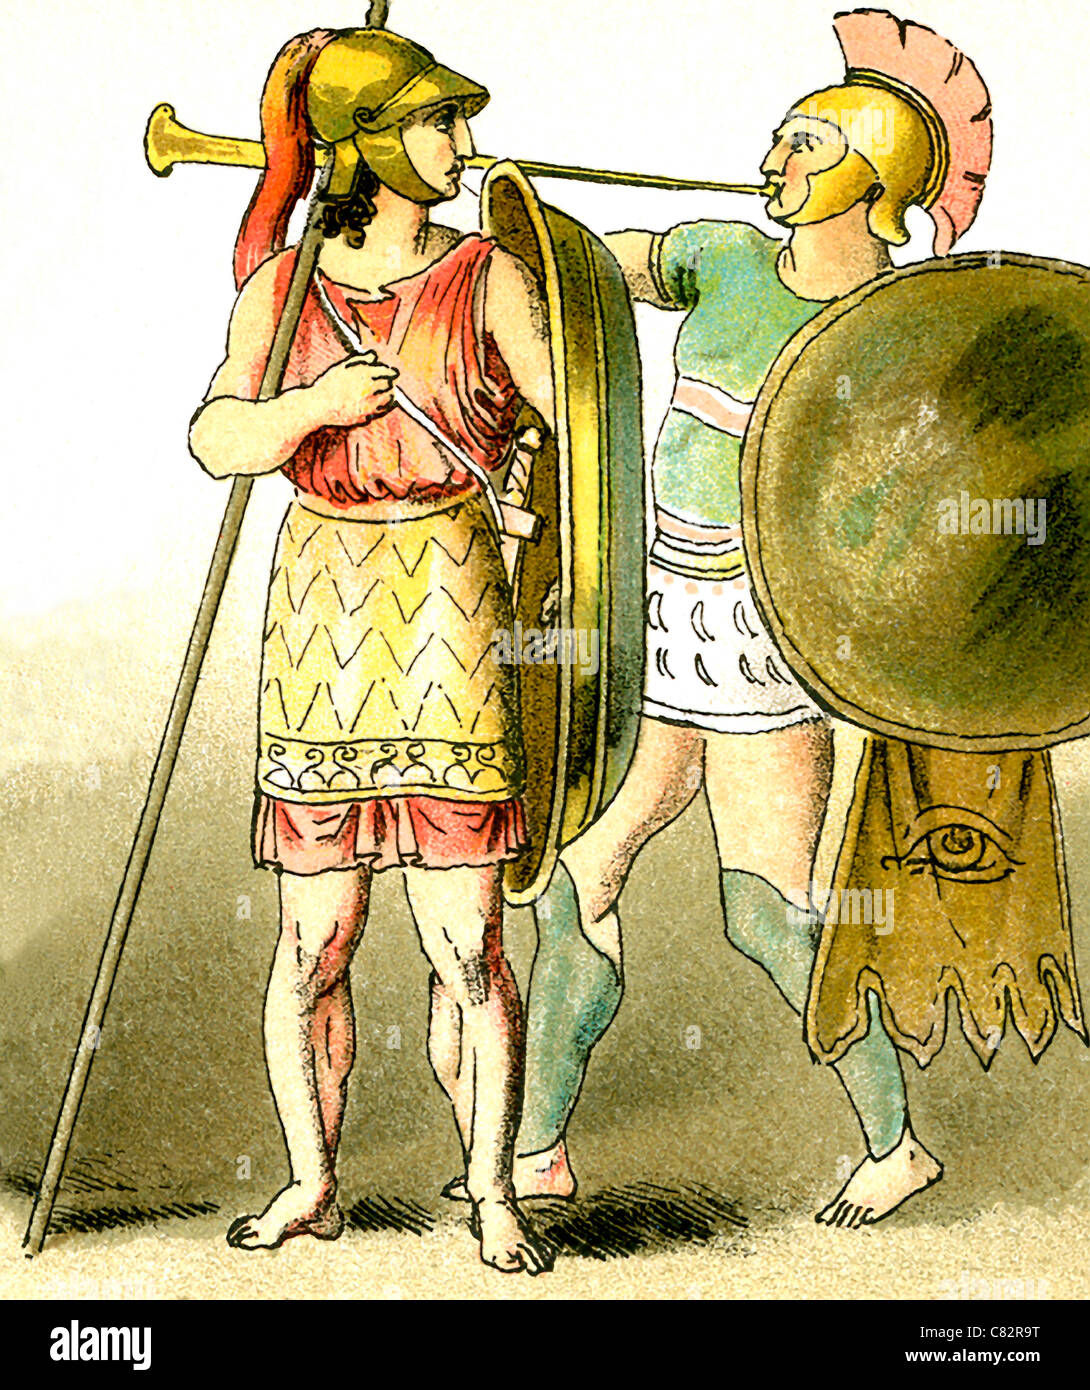 Queste illustrazioni degli antichi Greci rappresentano, da sinistra a destra: un guerriero e un Trombettista. Le illustrazioni data al 1892. Foto Stock